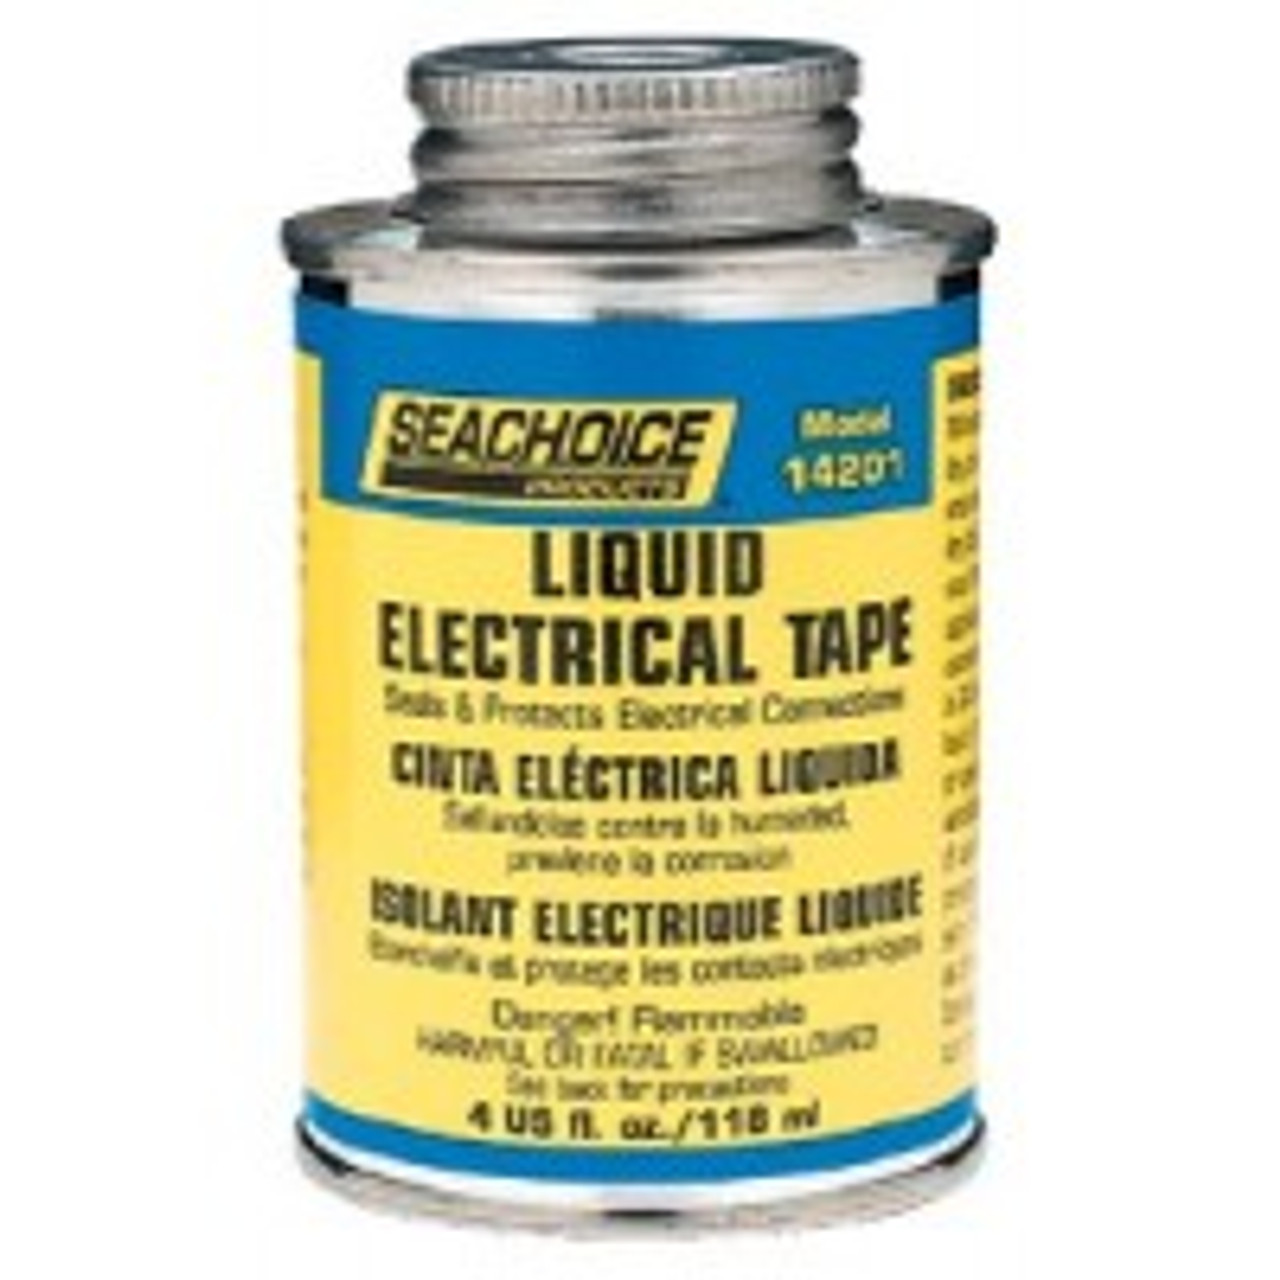 Seachoice Liquid Electrical Tape